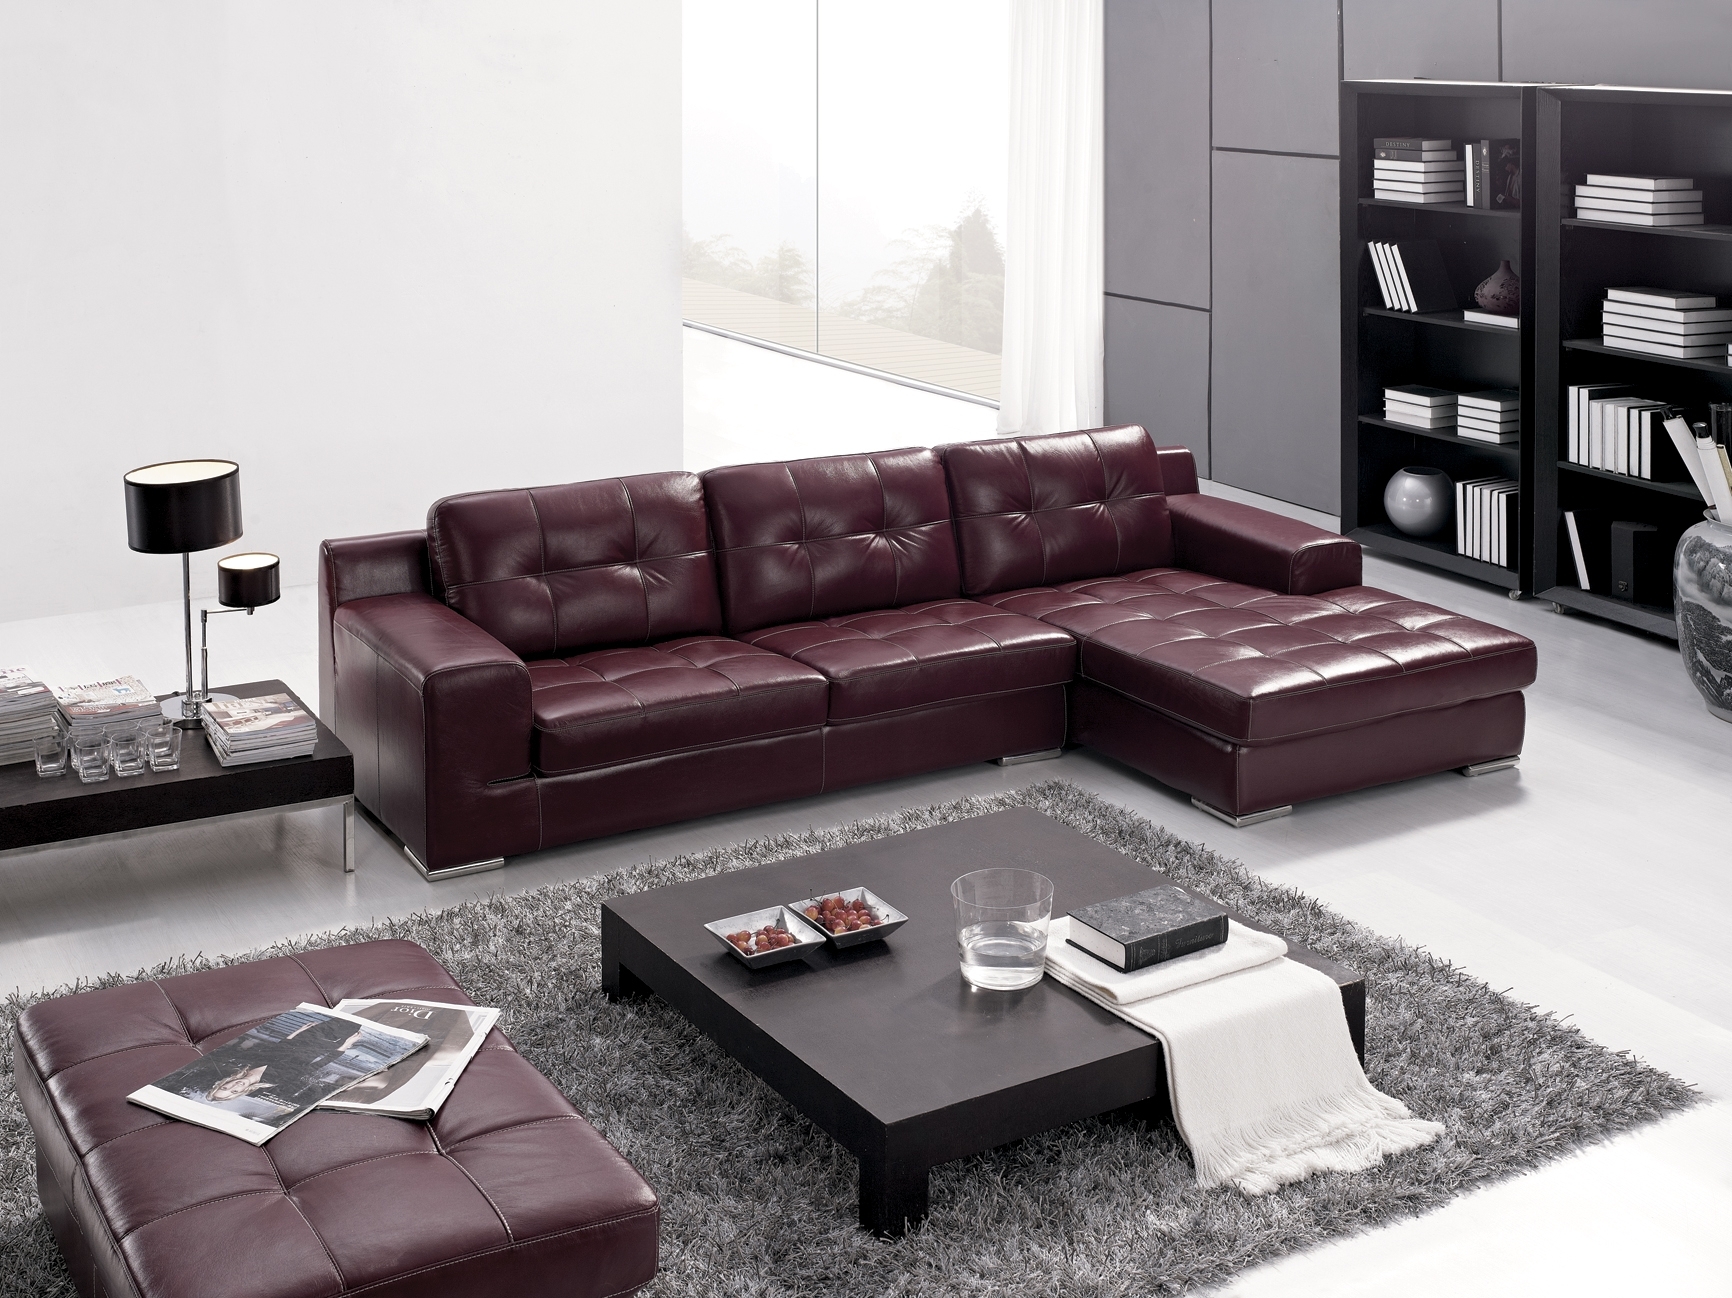 Purple and grey sofa